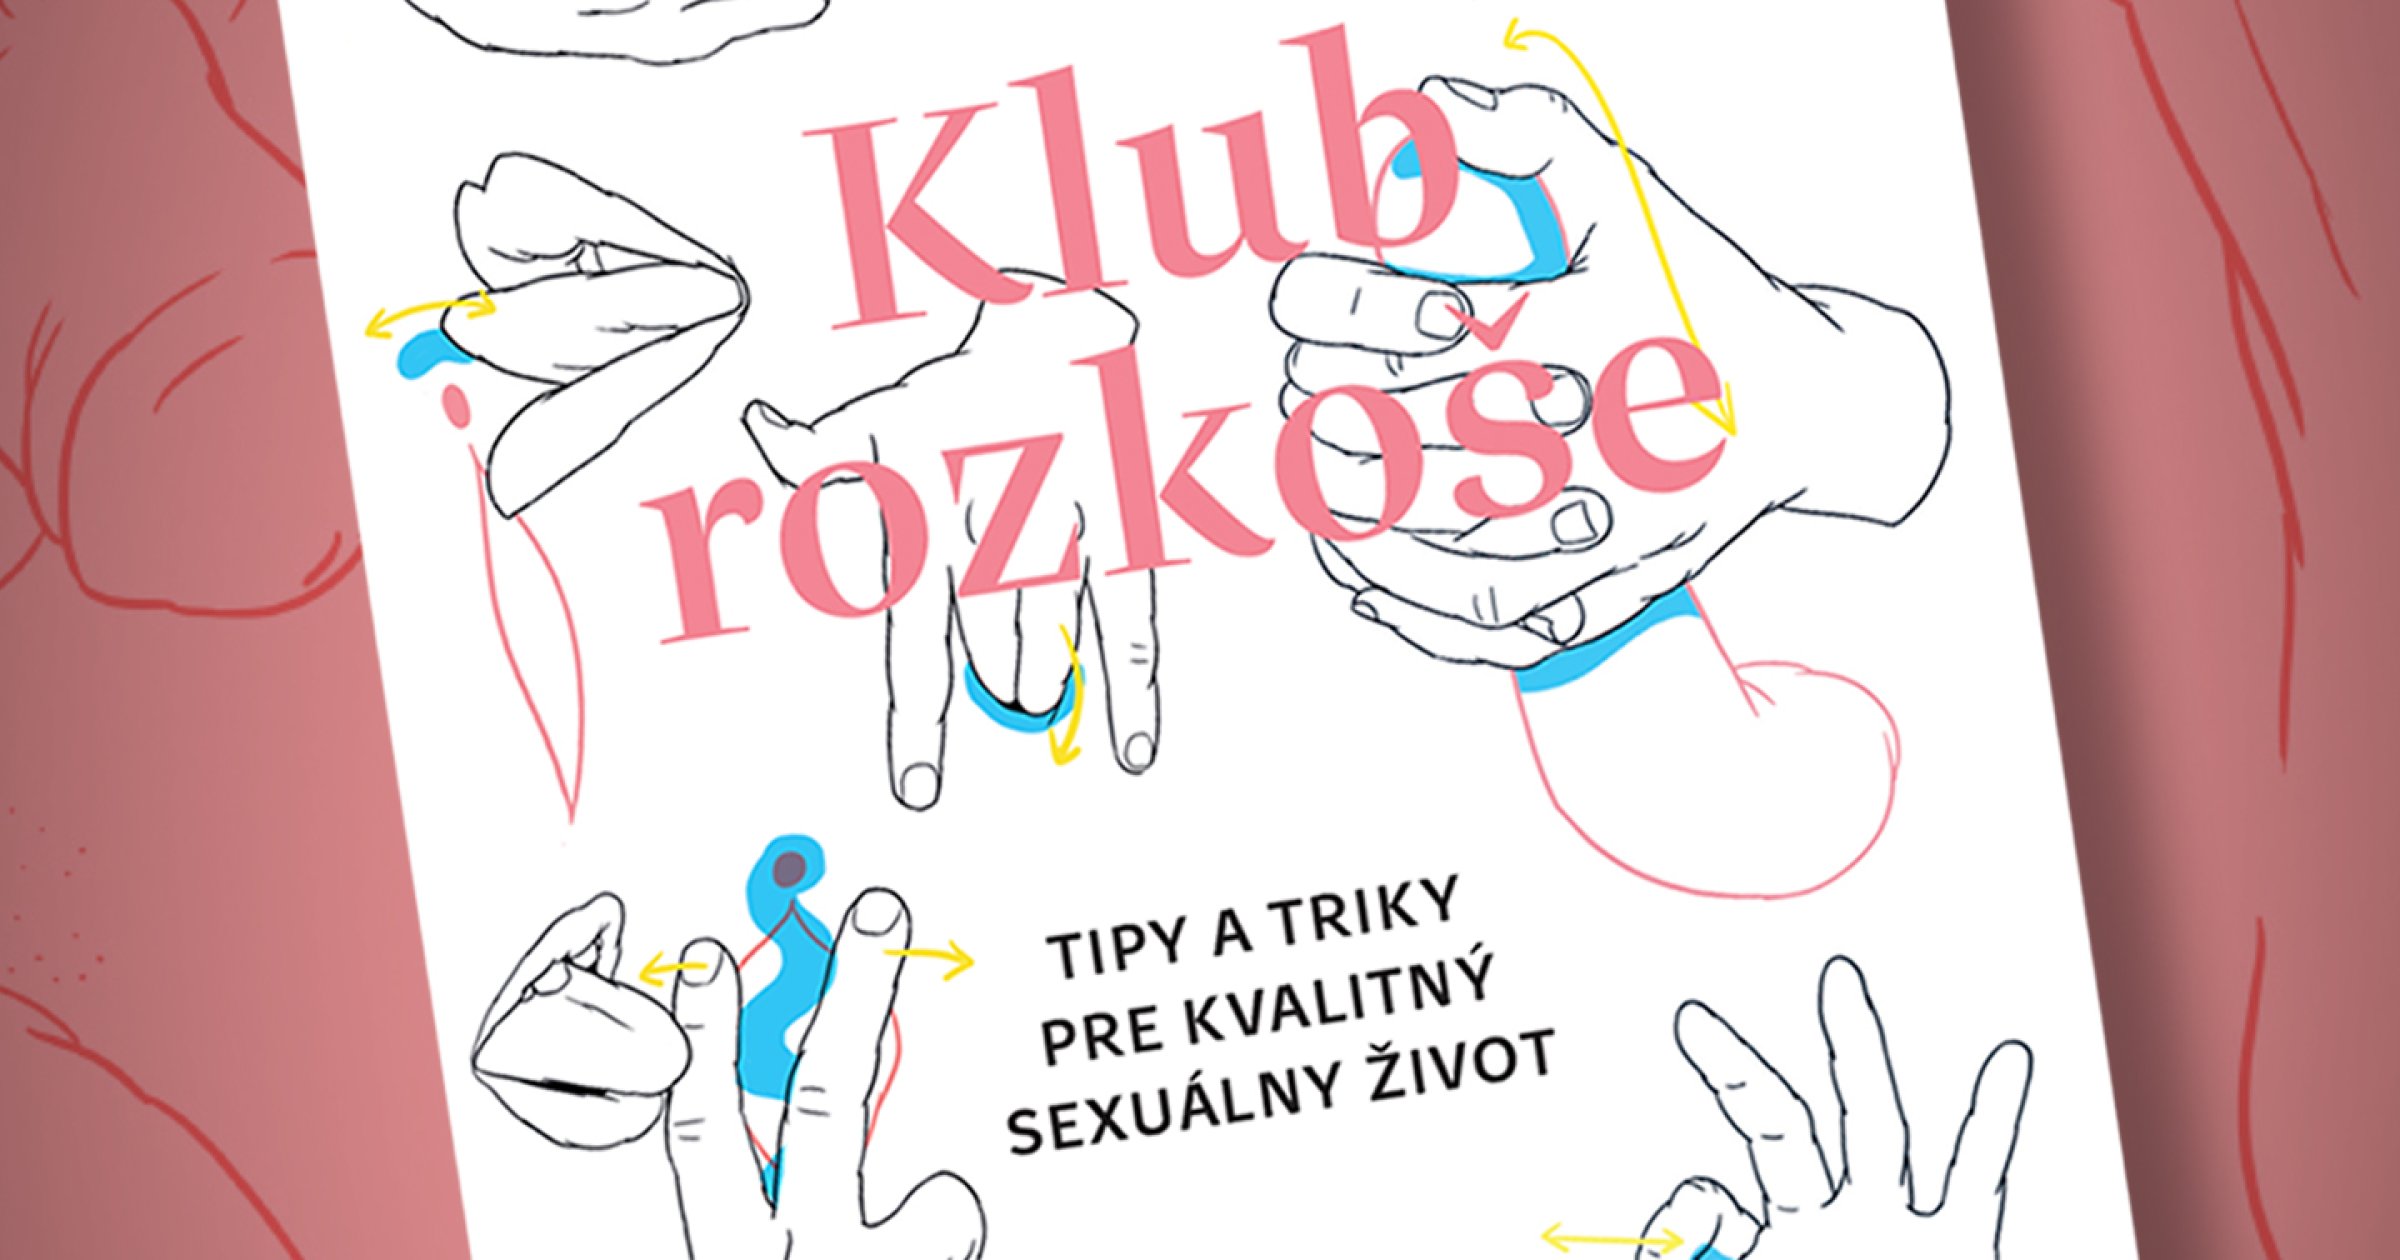 Pleasure Club – Trucs et astuces pour une vie sexuelle de qualité